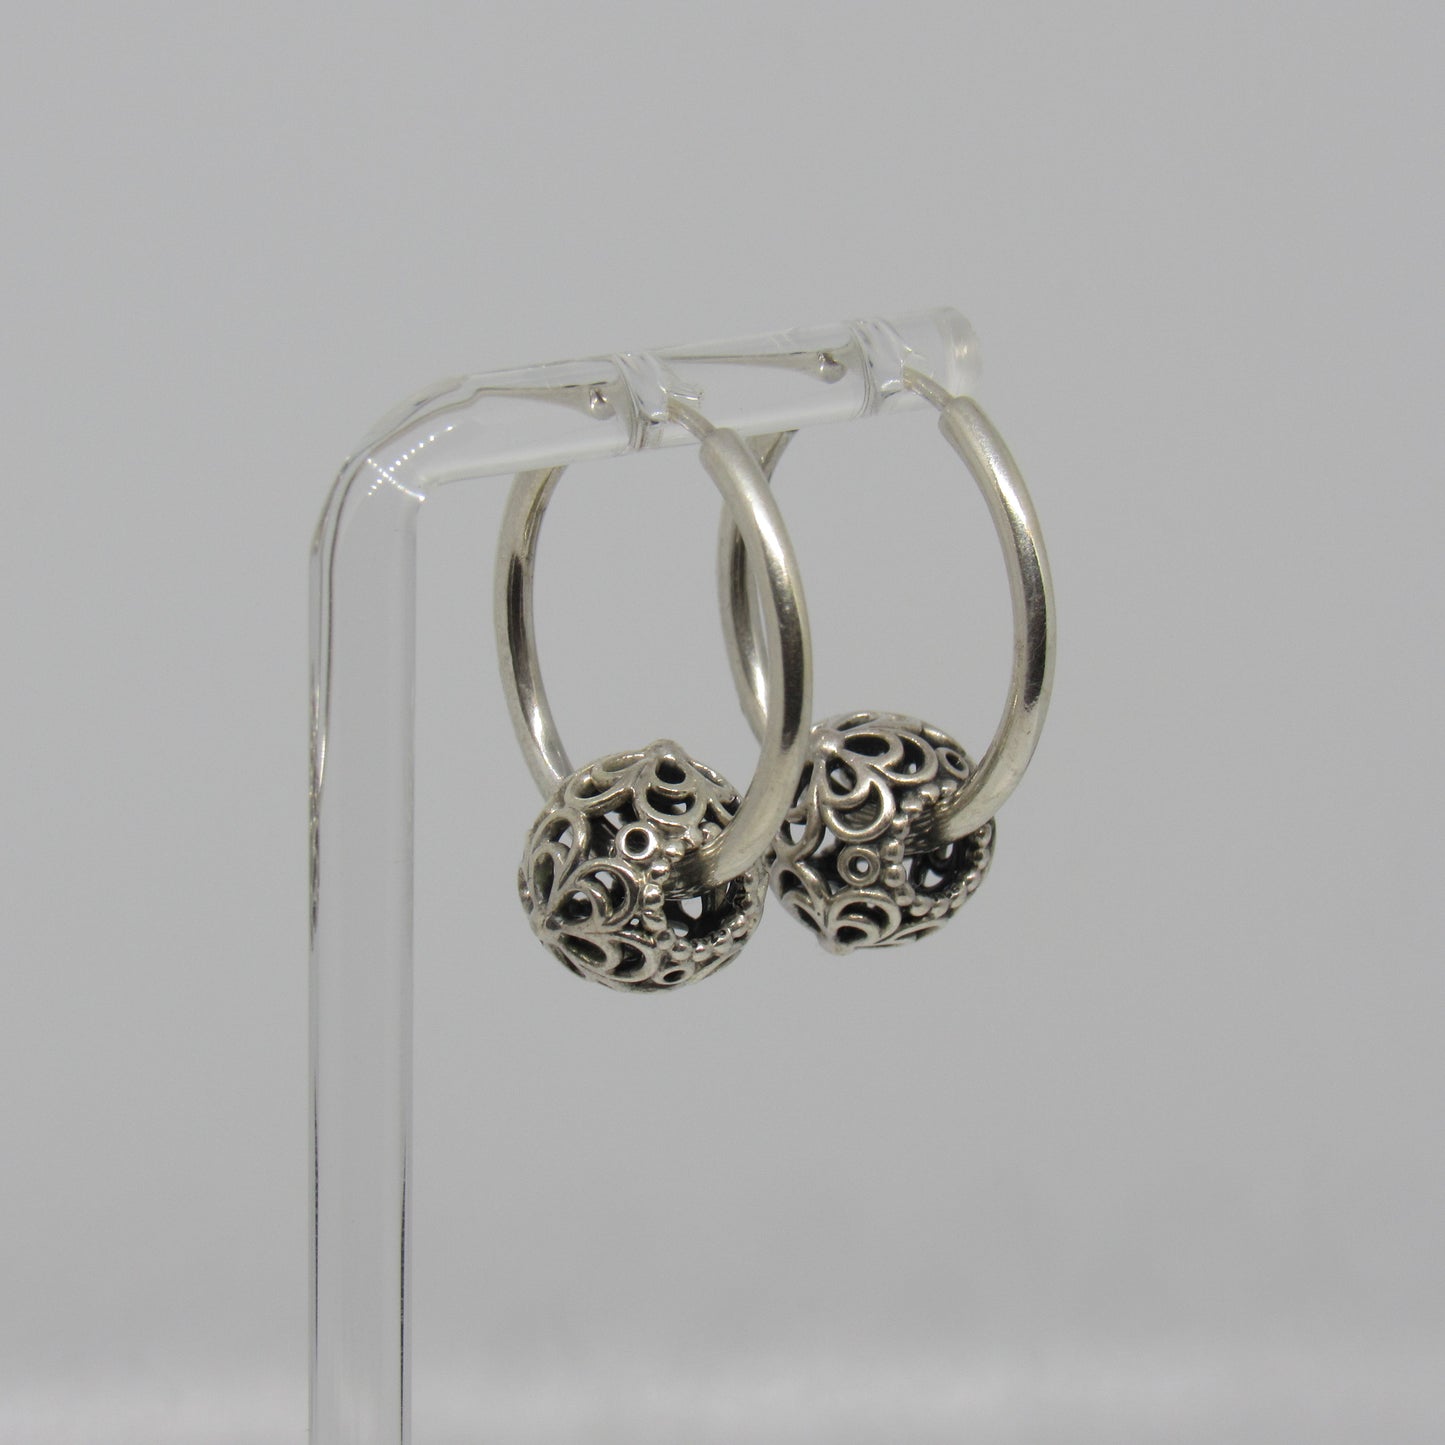 Pandora Sterling Silver Hoop Earrings w/ Picking Daisies Flower Charms